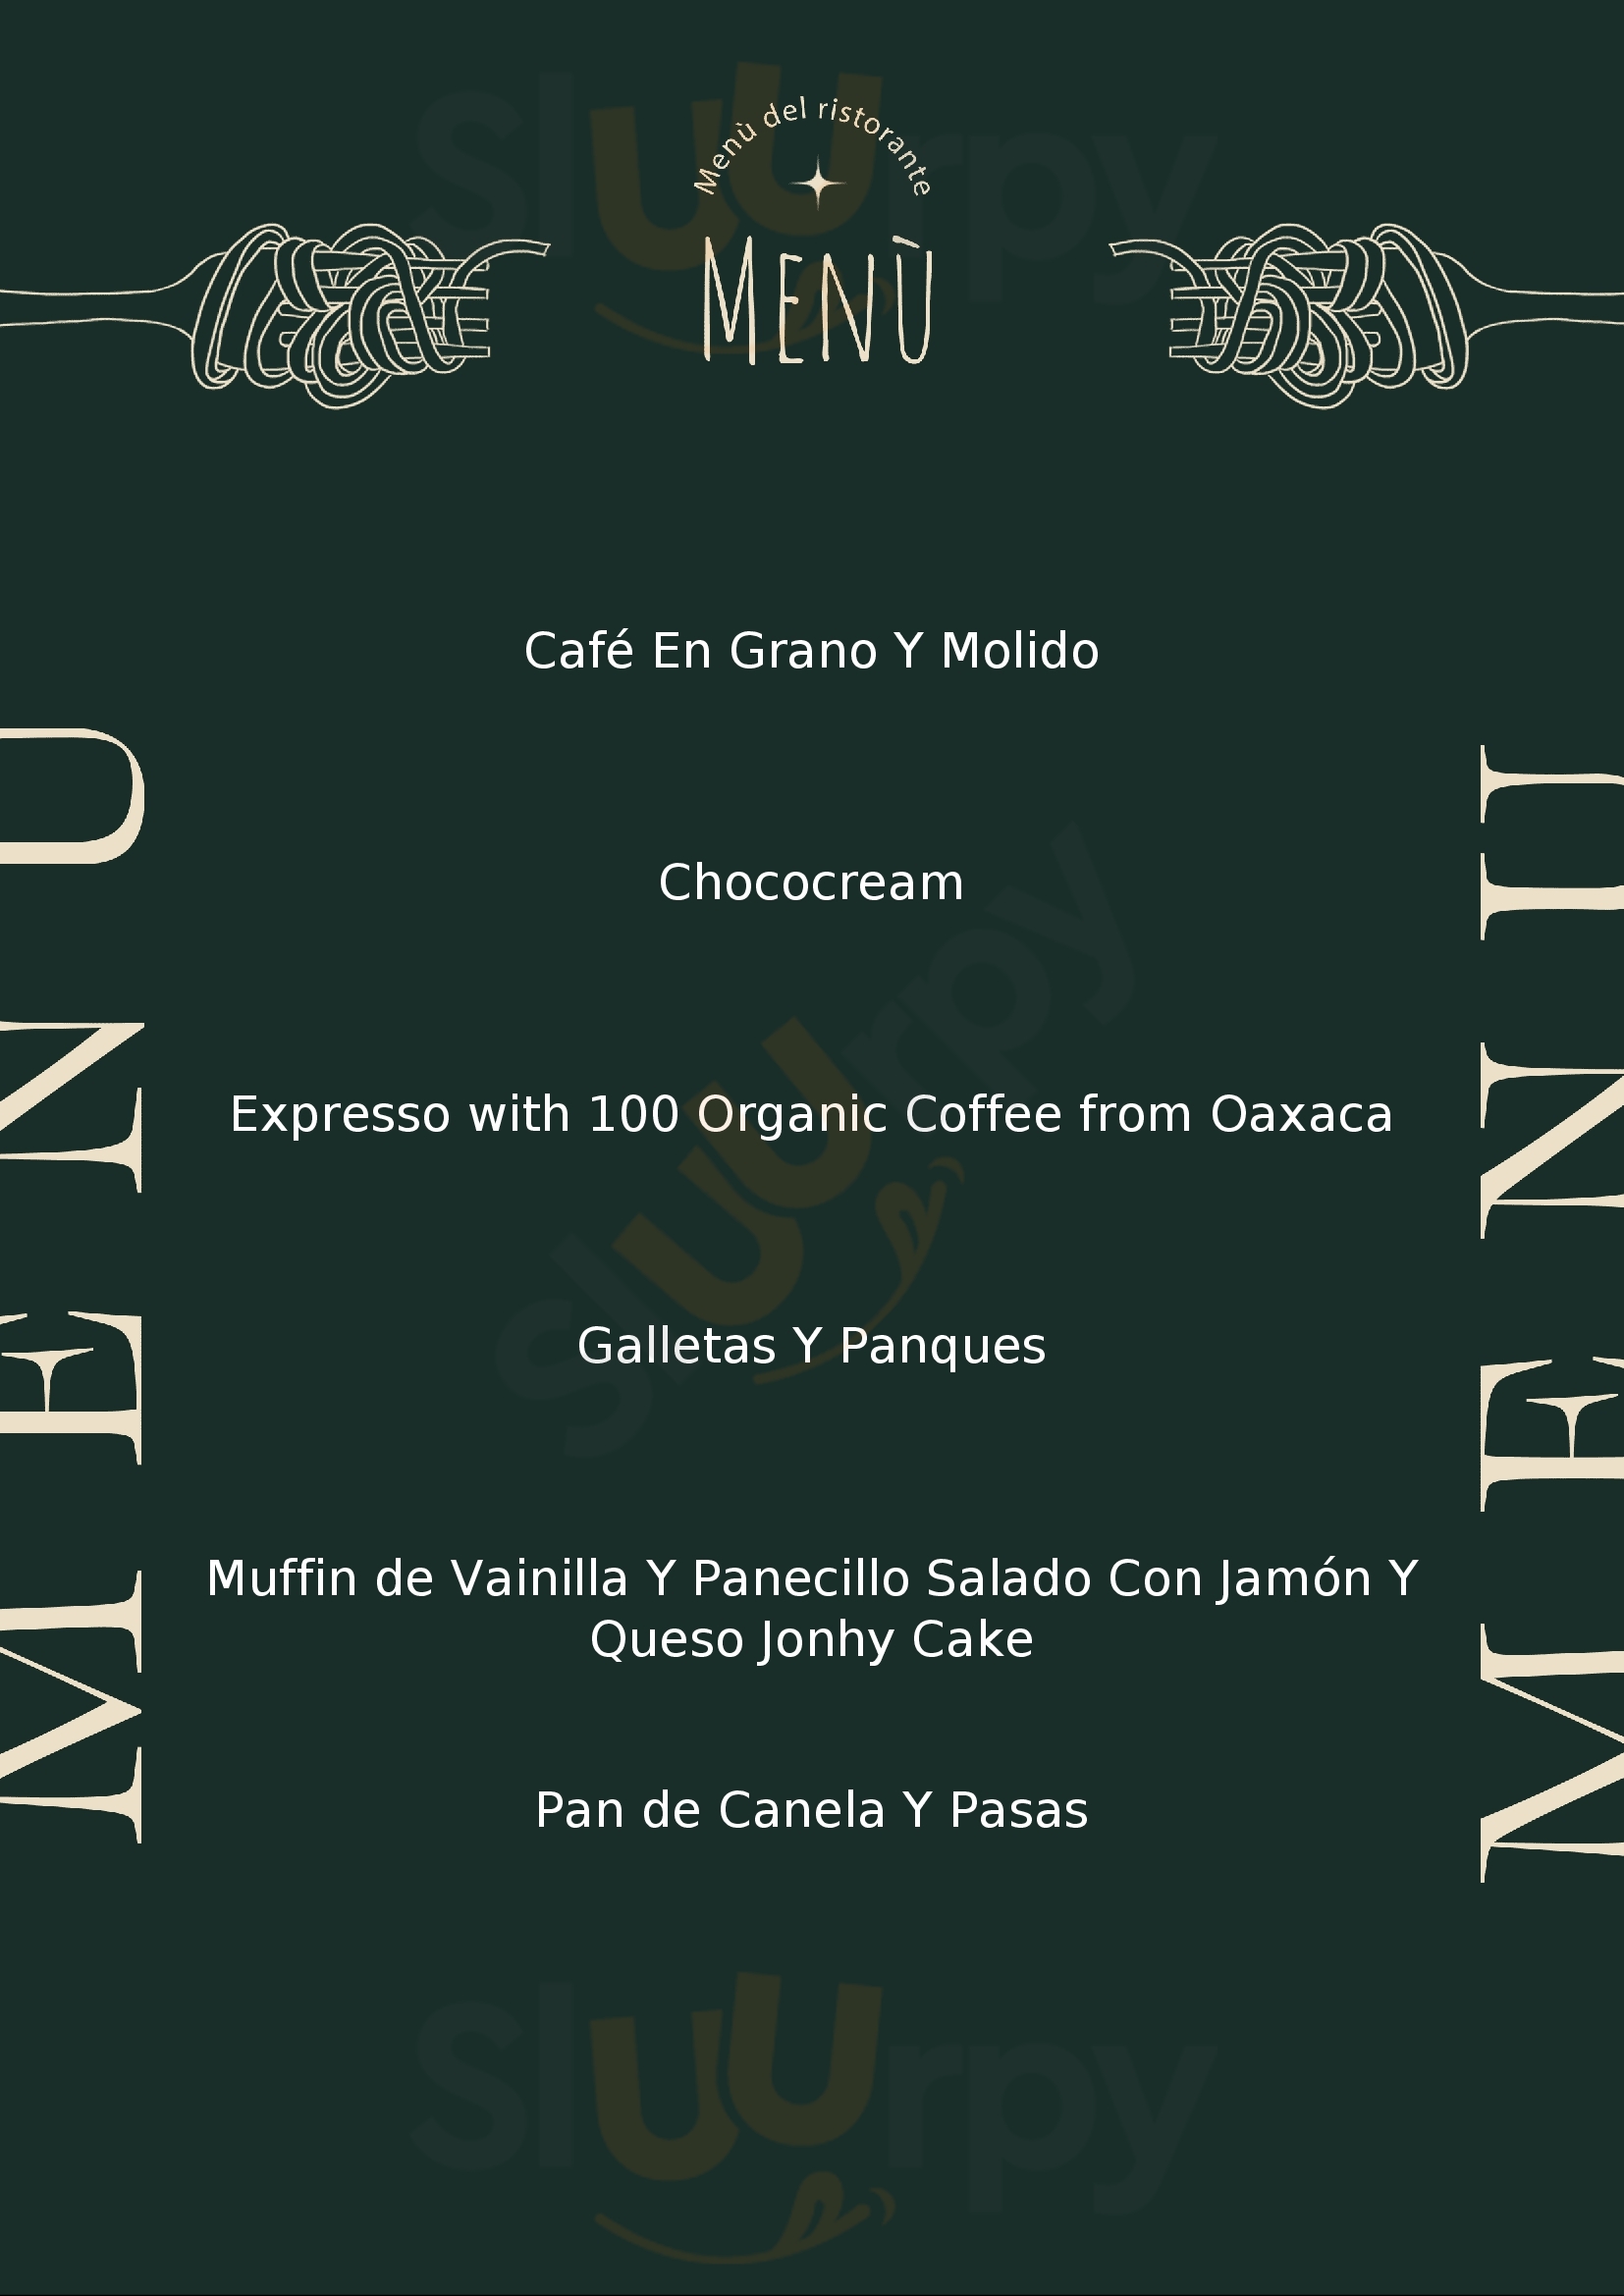 Gallery Café Ciudad de México Menu - 1